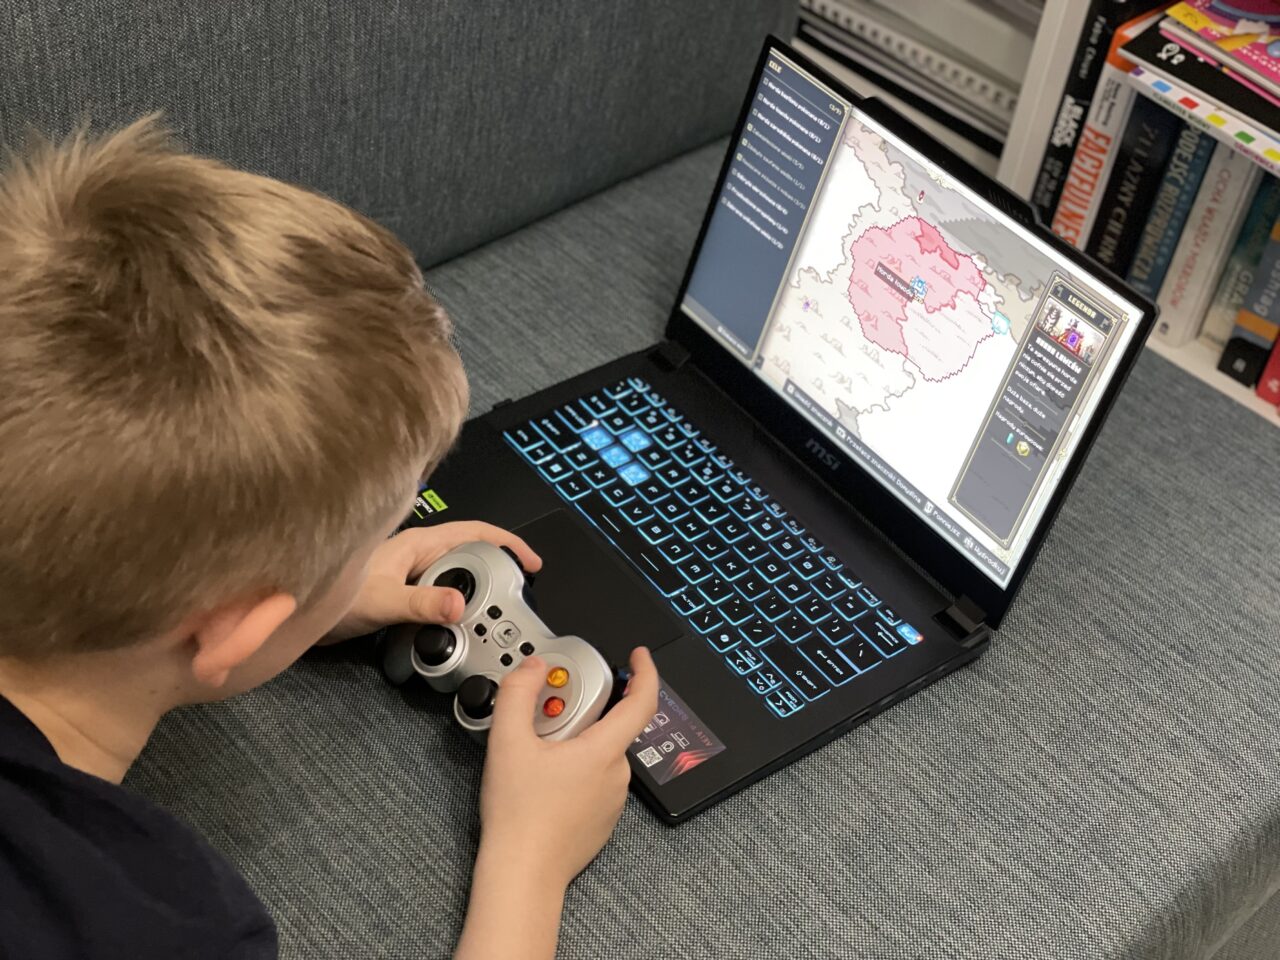 Chłopiec gra w grę strategiczną na laptopie przy użyciu kontrolera do gier.